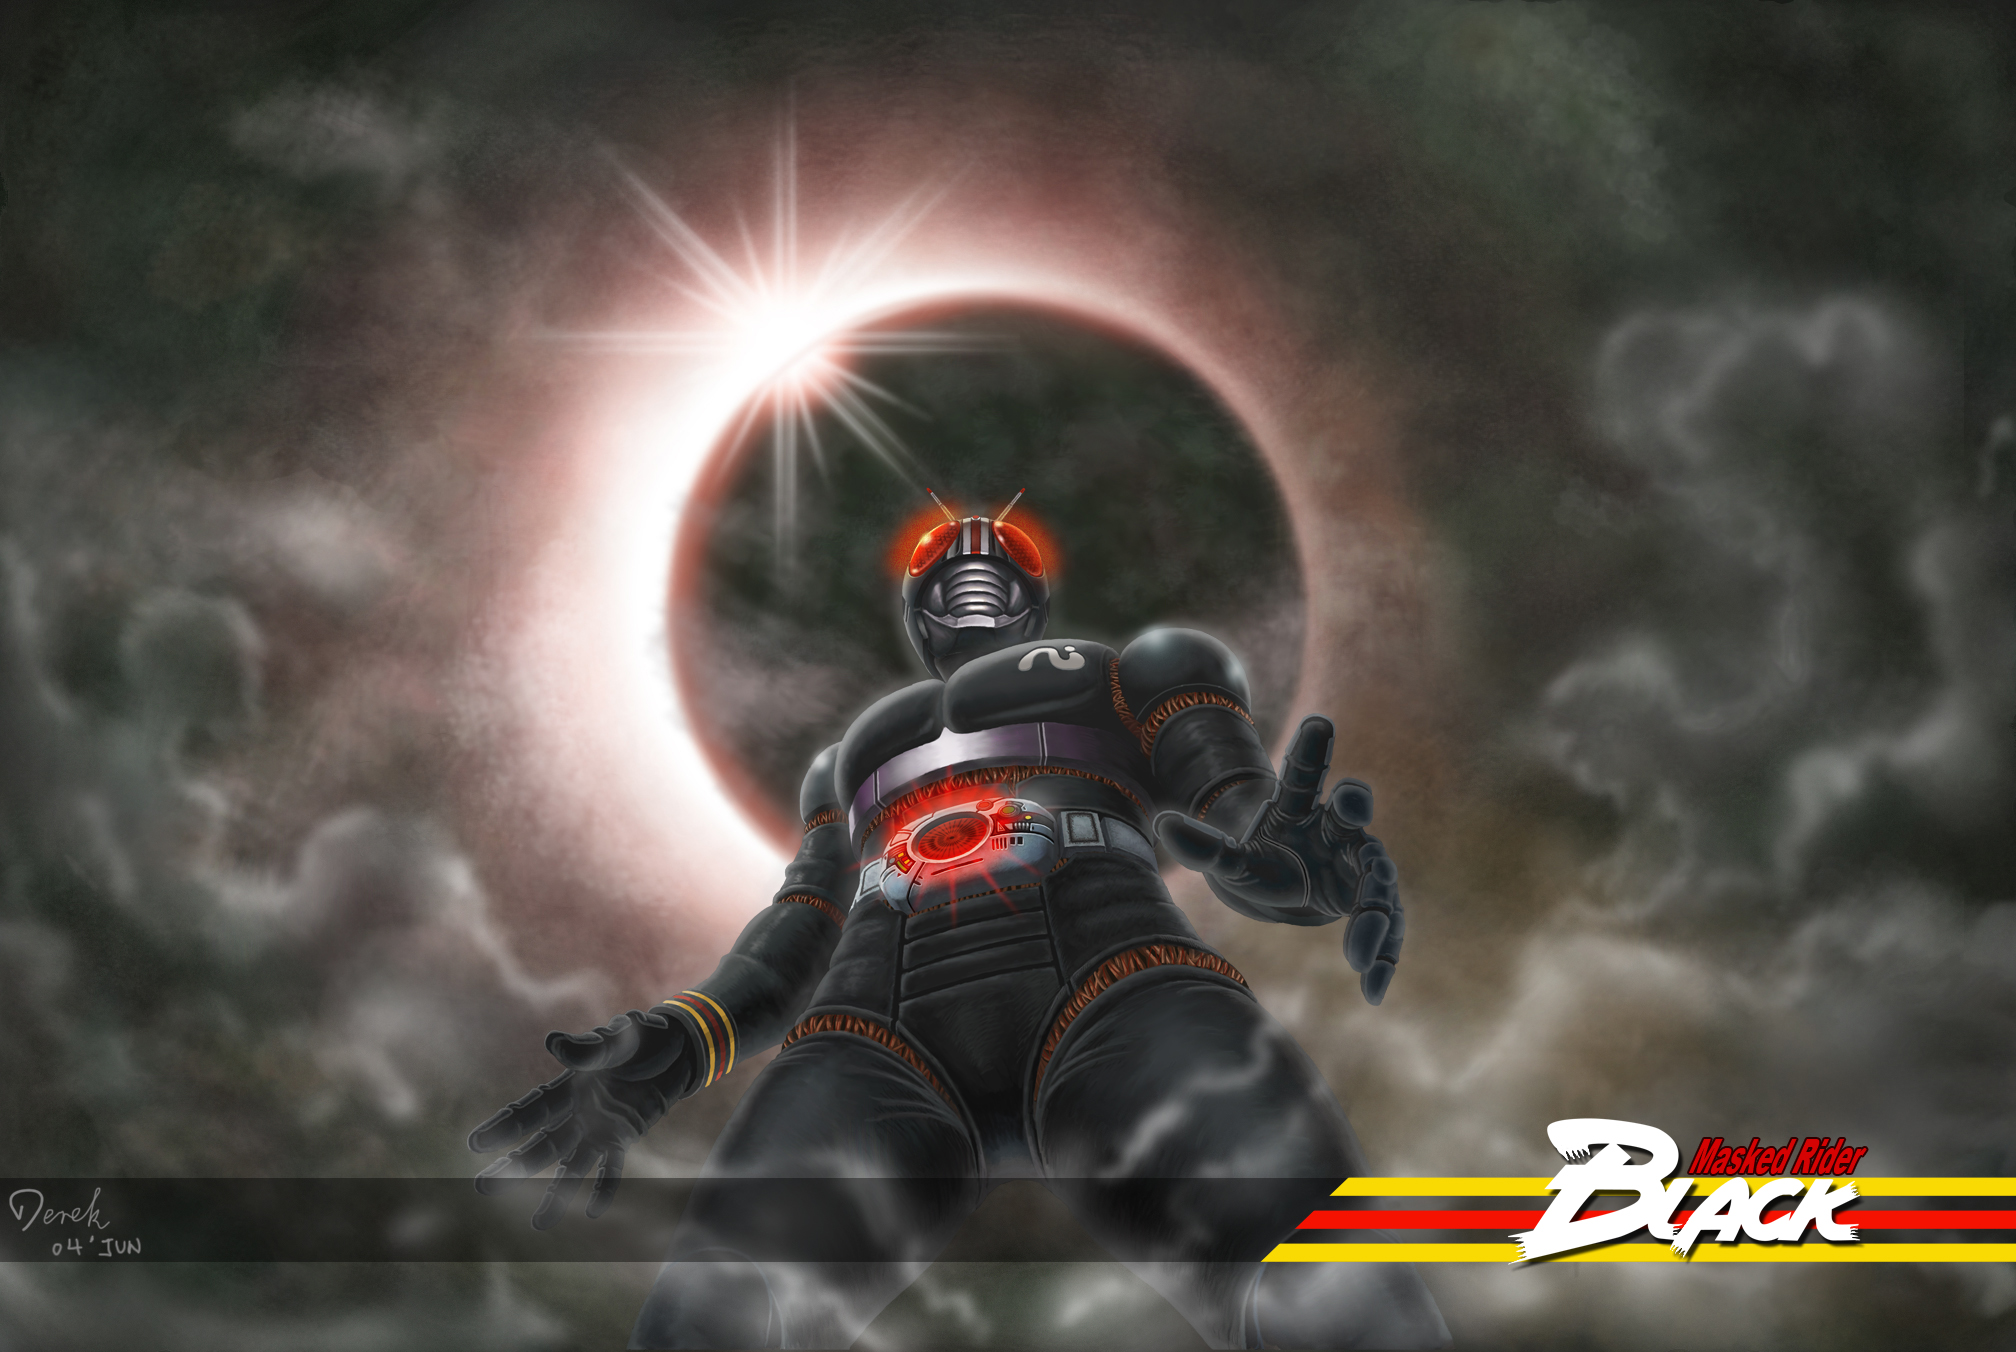 Kamen Rider Black Wallpaper Sf